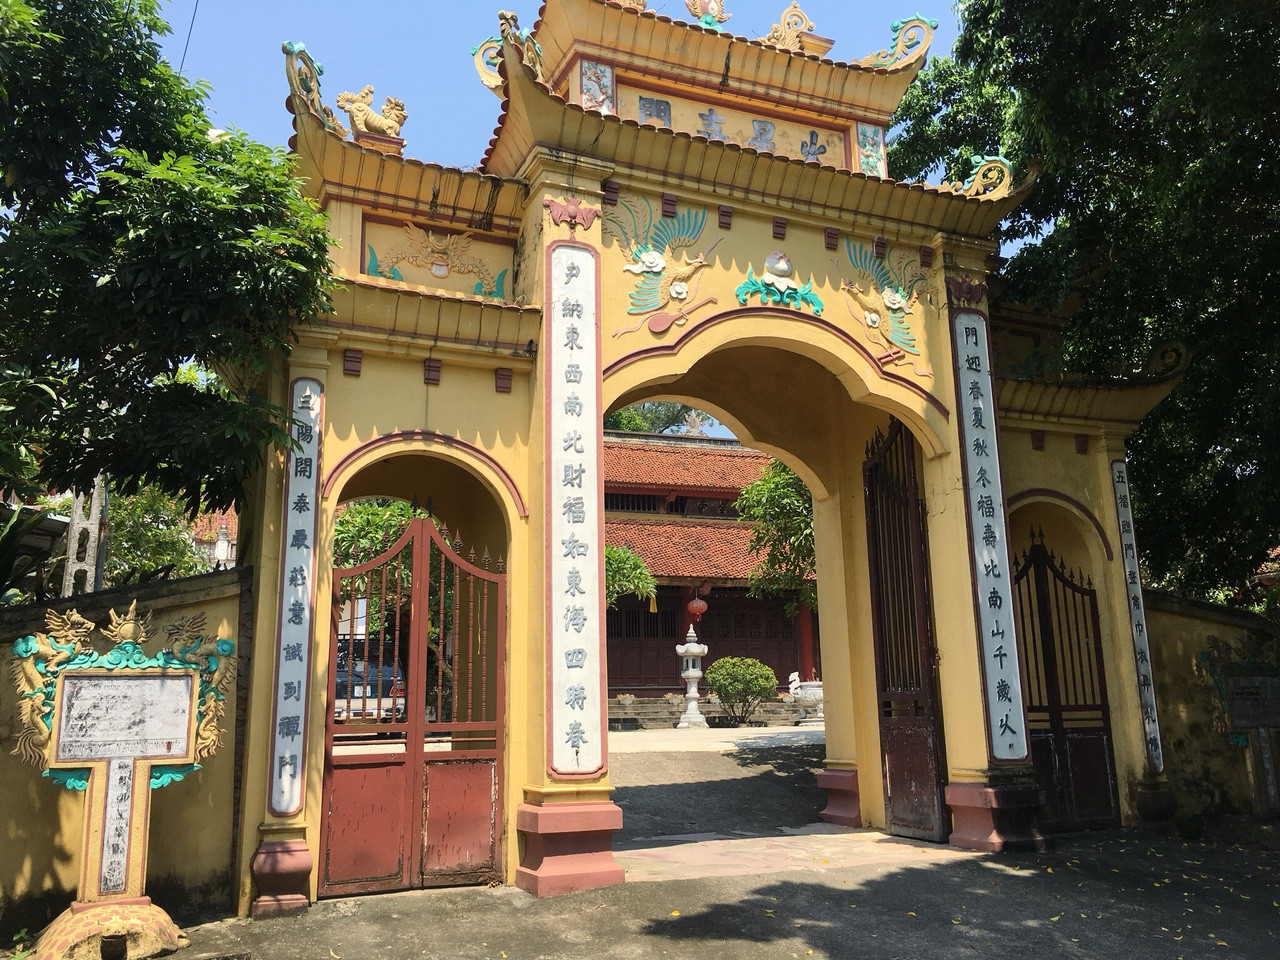 Chúc Sơn, Hà Nội: Sạt lở nghiêm trọng nguy cơ ngôi chùa Hỏa Tinh -  Đồi Ông Bụt không còn nữa